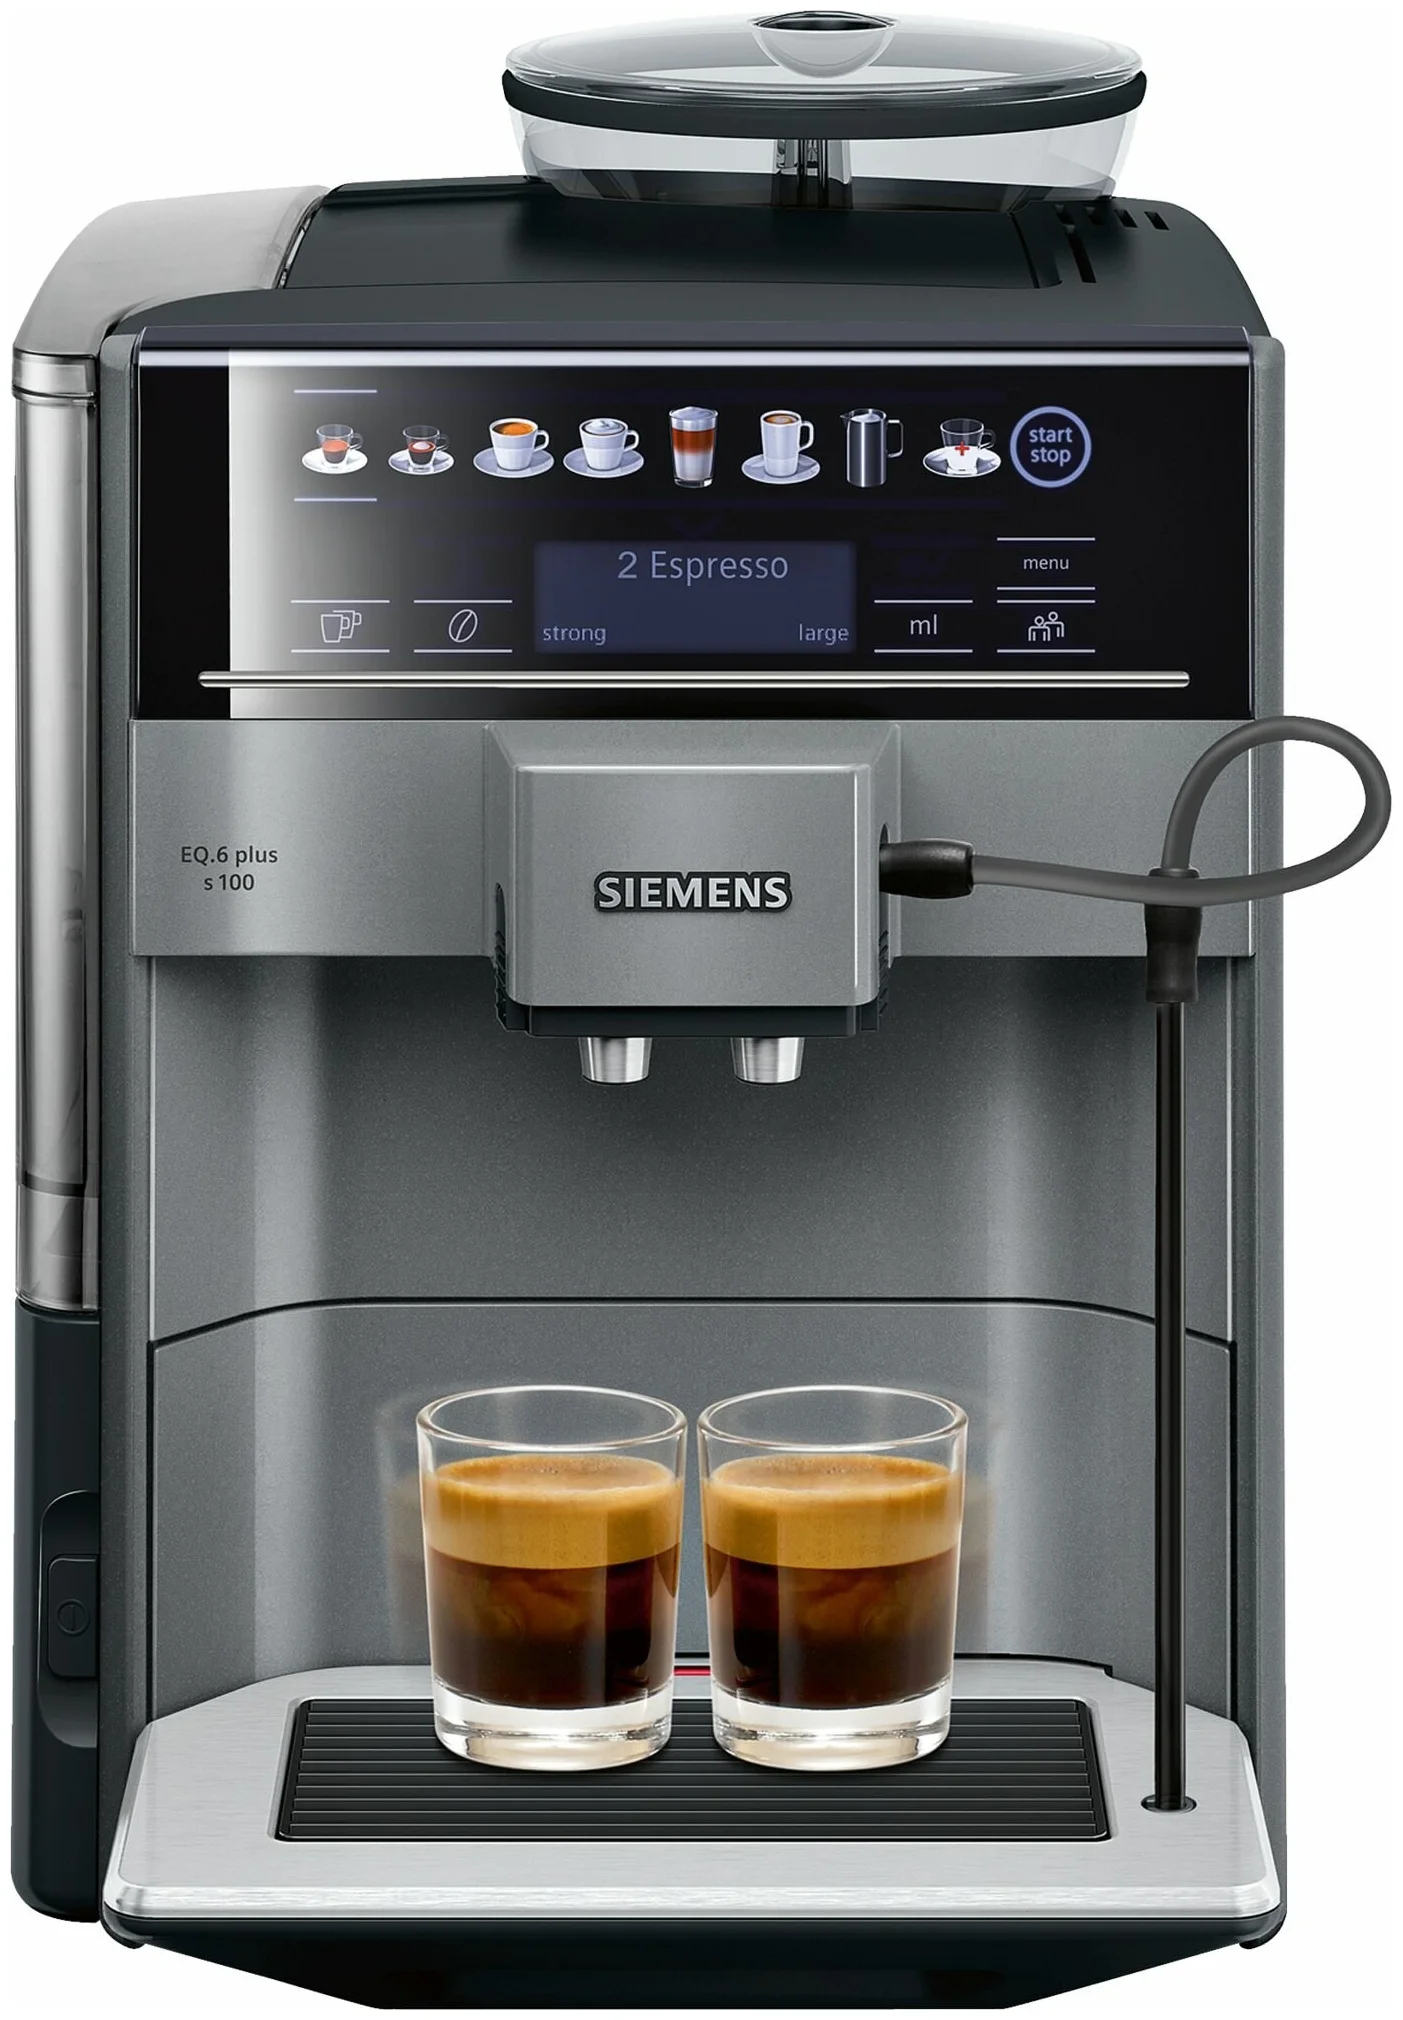 Siemens TE651209RW EQ.6 plus s100 - тип используемого кофе: молотый / зерновой